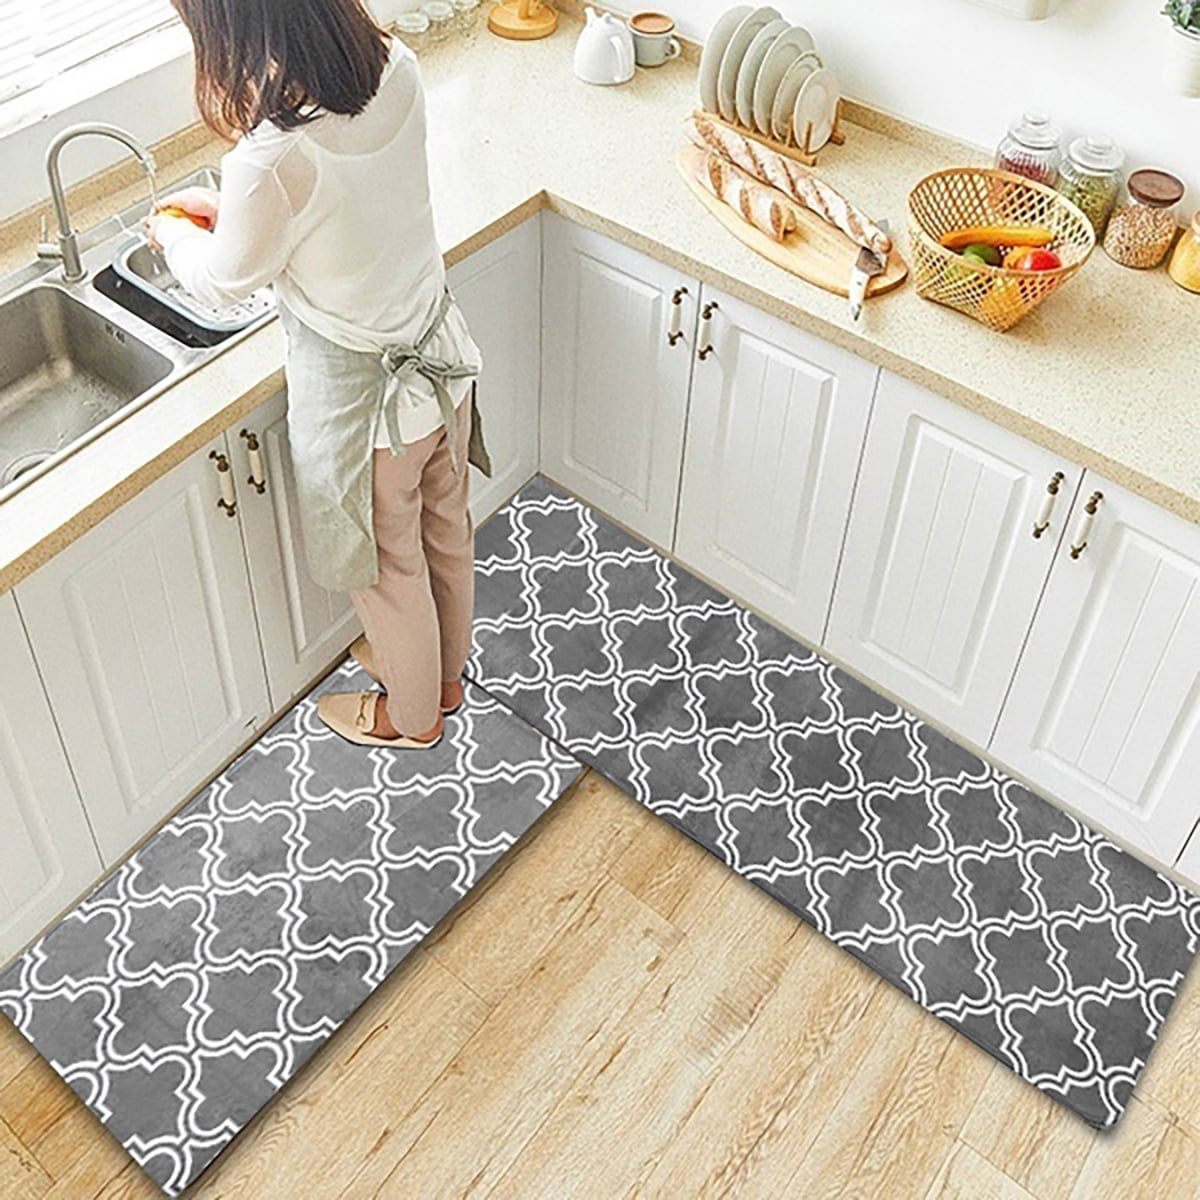 rubber kitchen mats